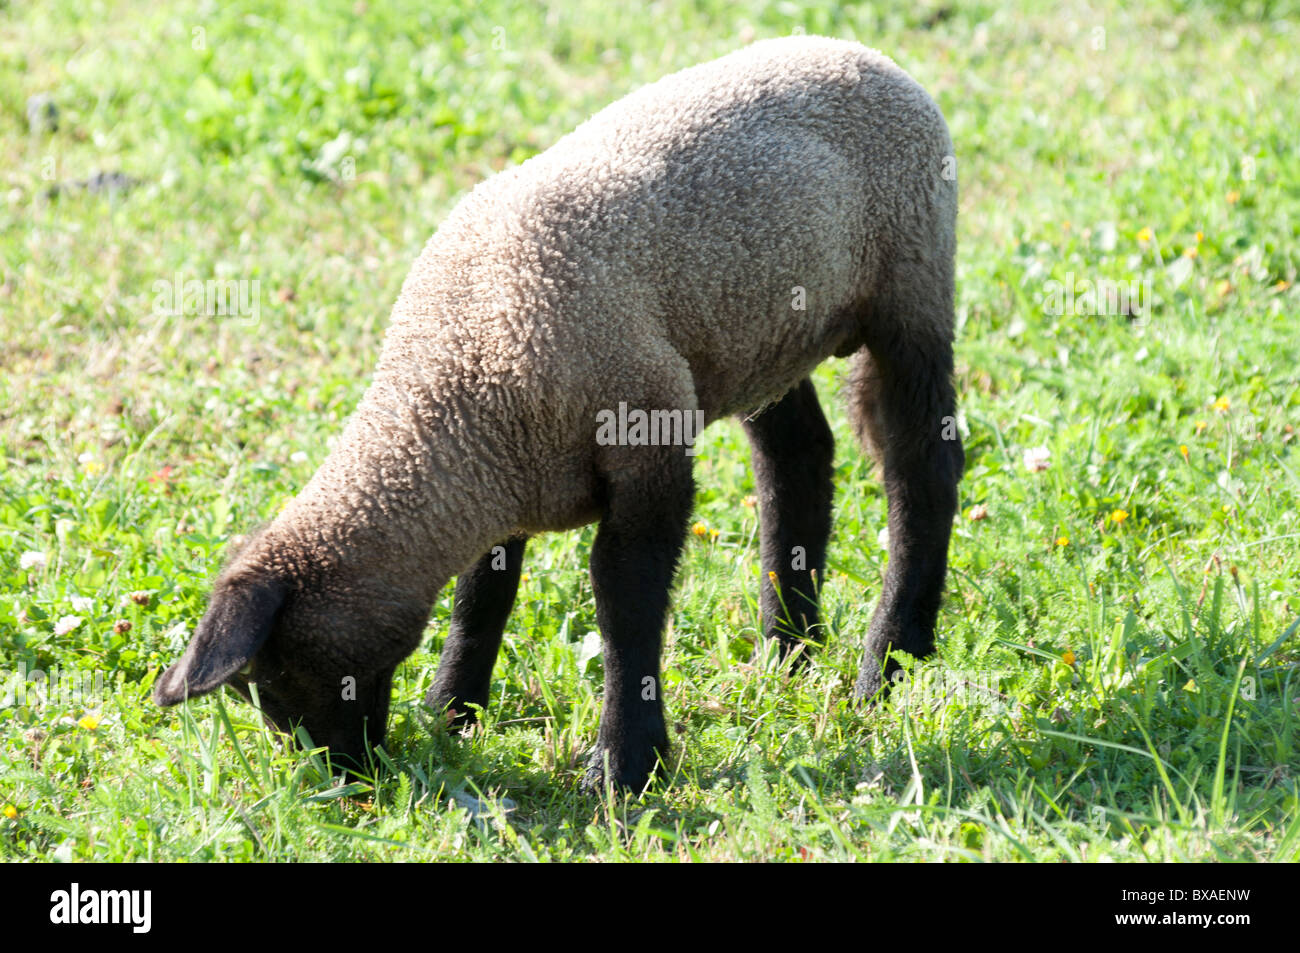 Una oveja comiendo hierba. Foto de stock